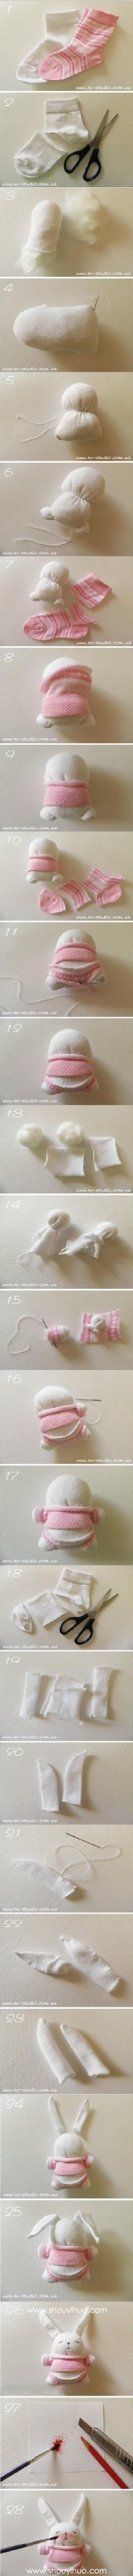 袜子手工制作可爱毛绒玩具兔子